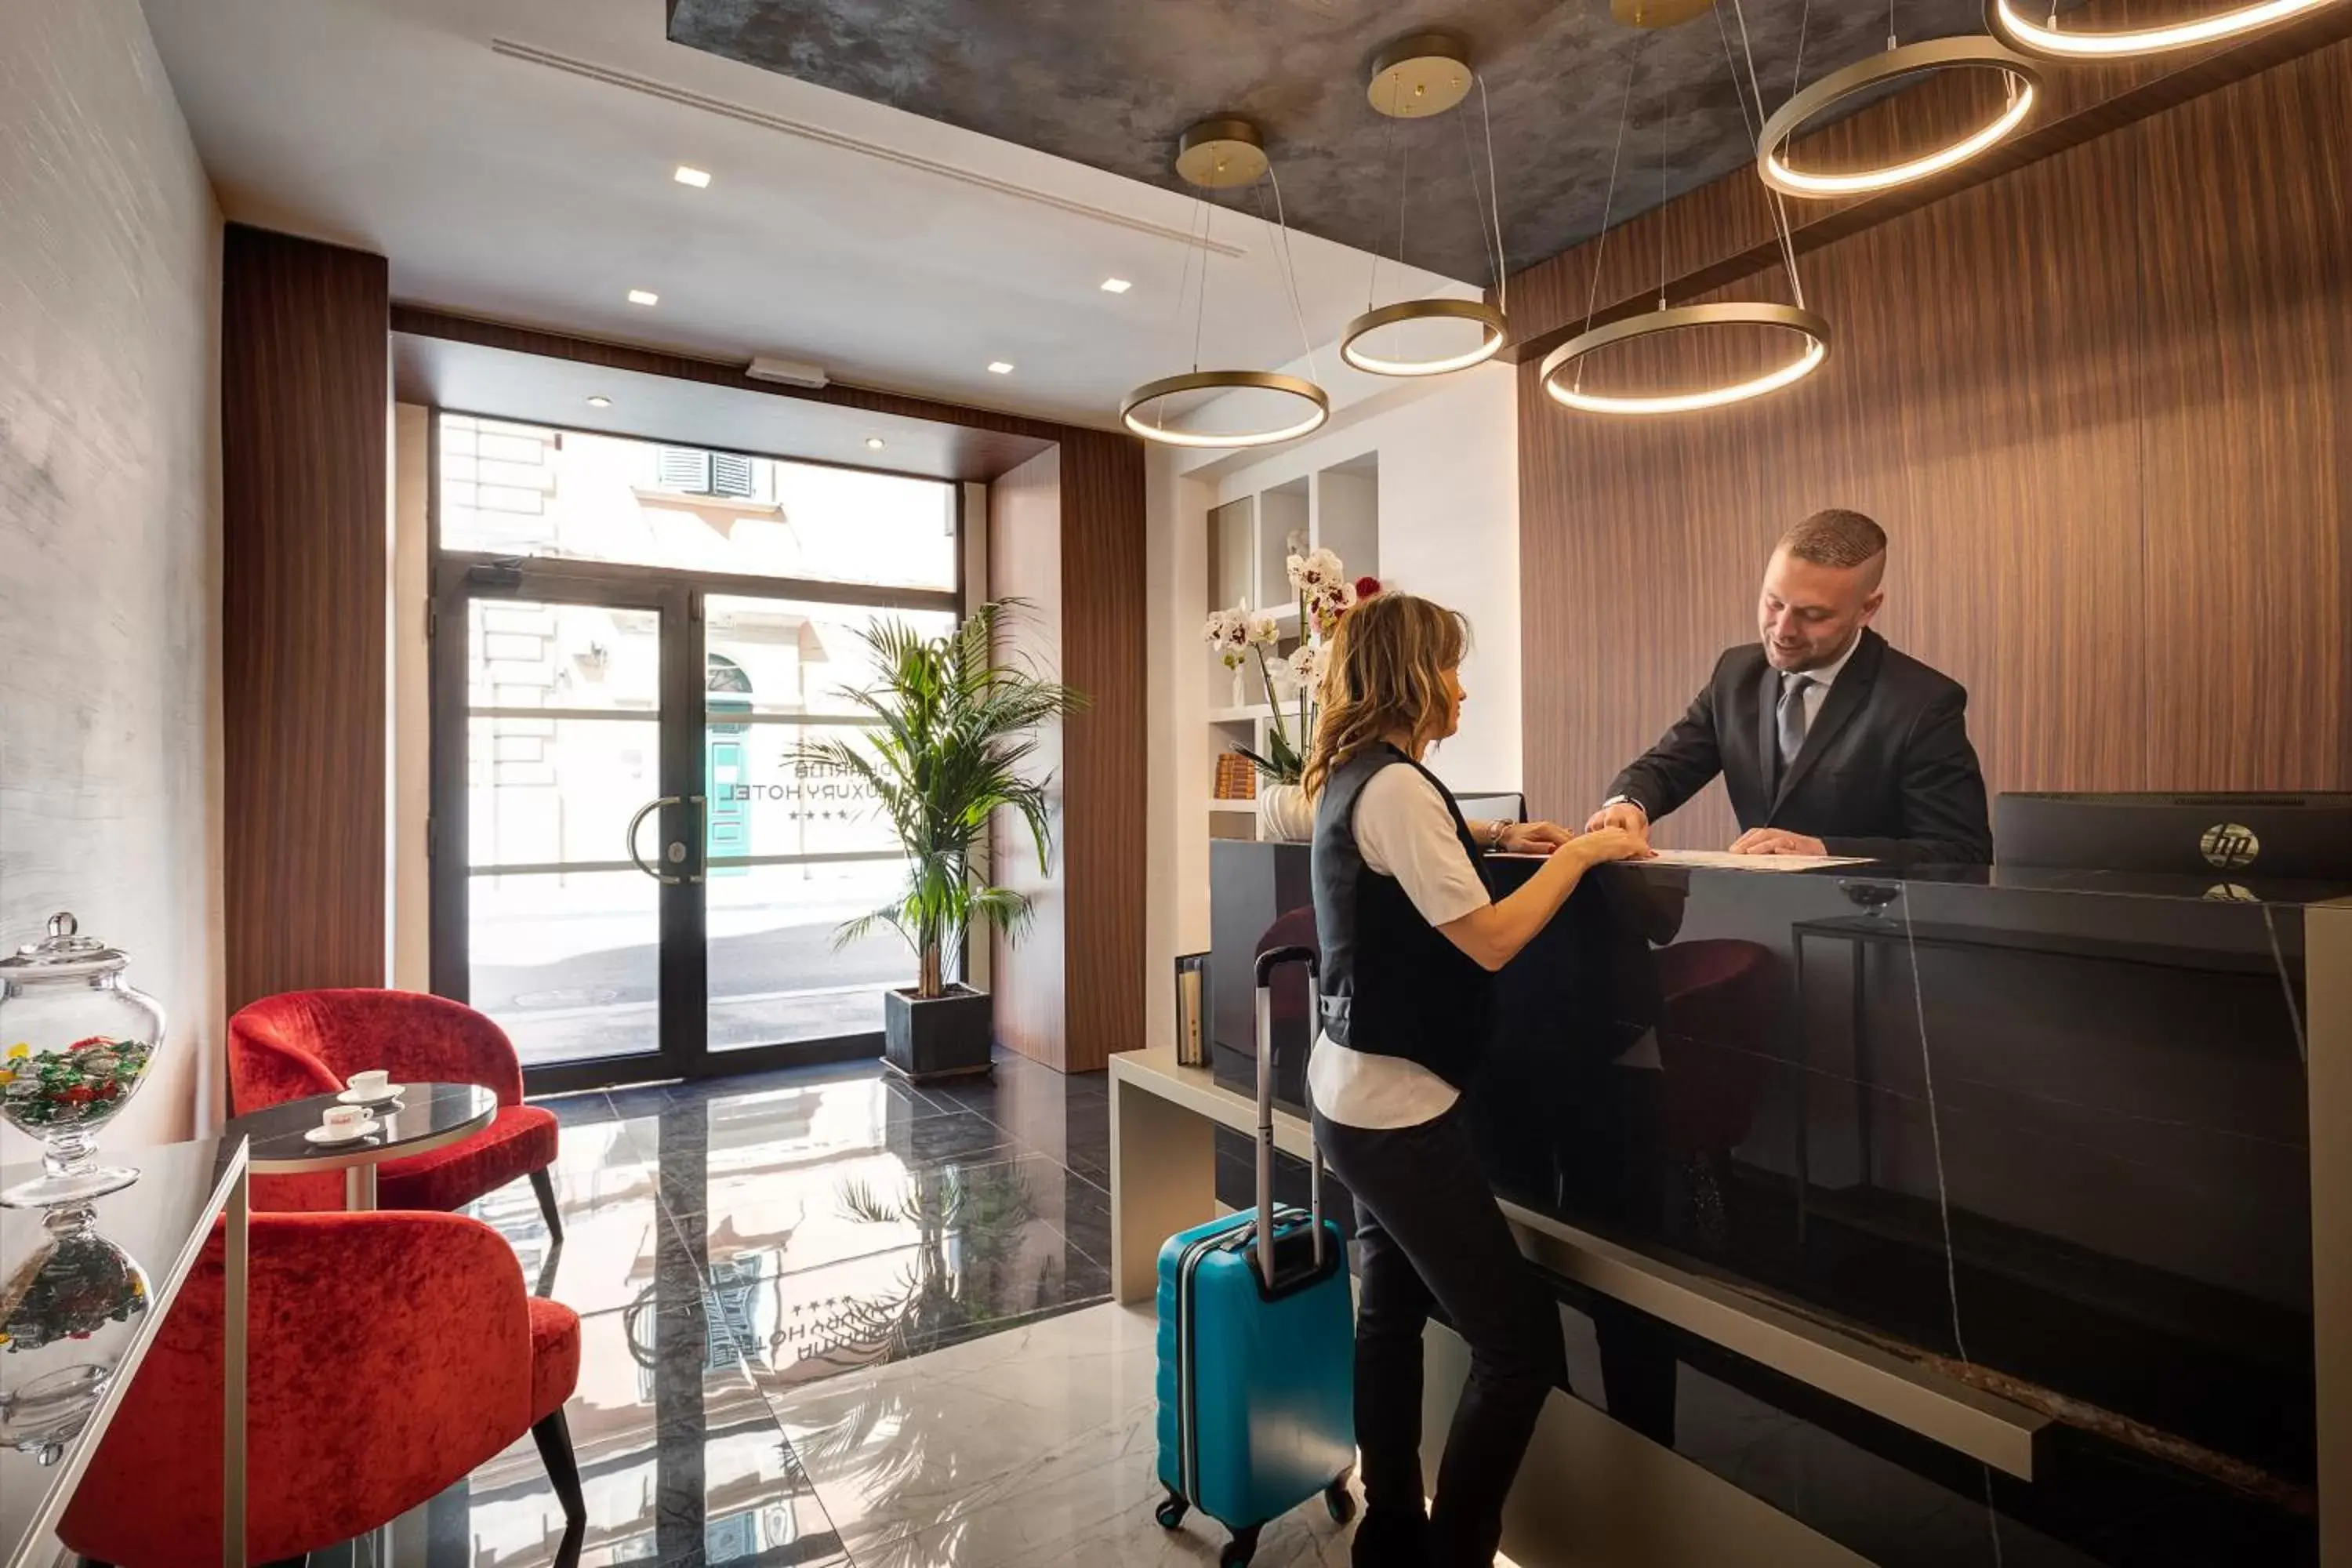 Staff, Lobby/Reception in Dharma Luxury Hotel